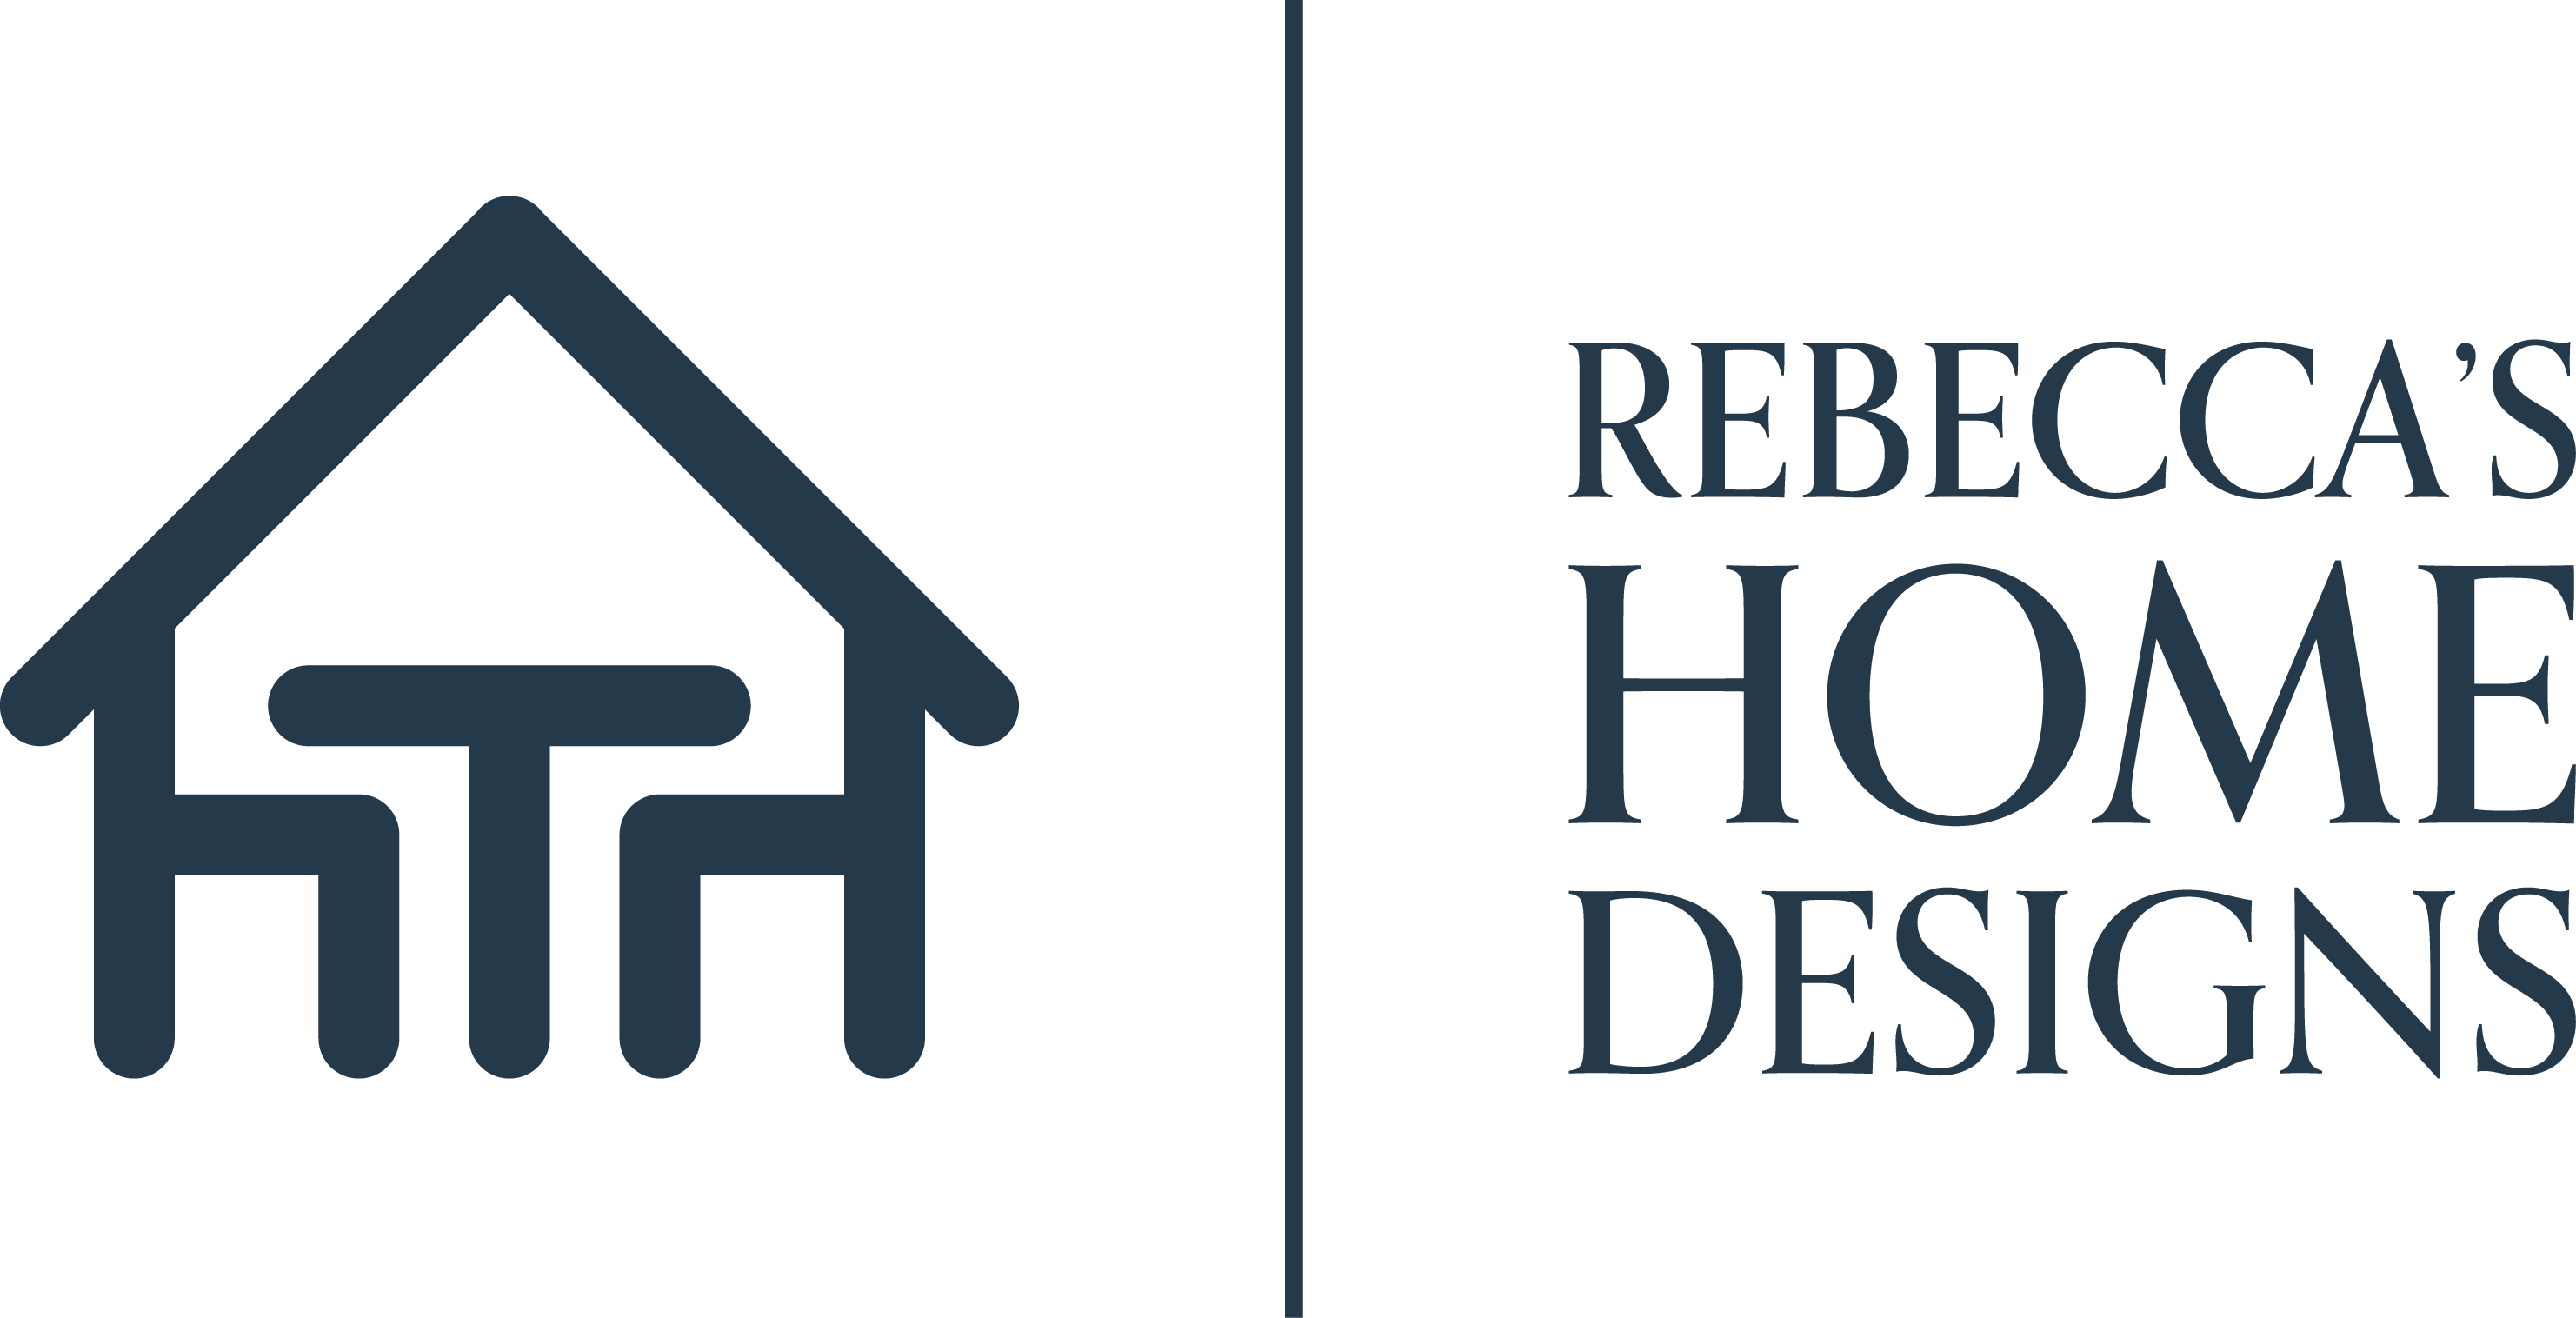 Rebecca's Home Designs